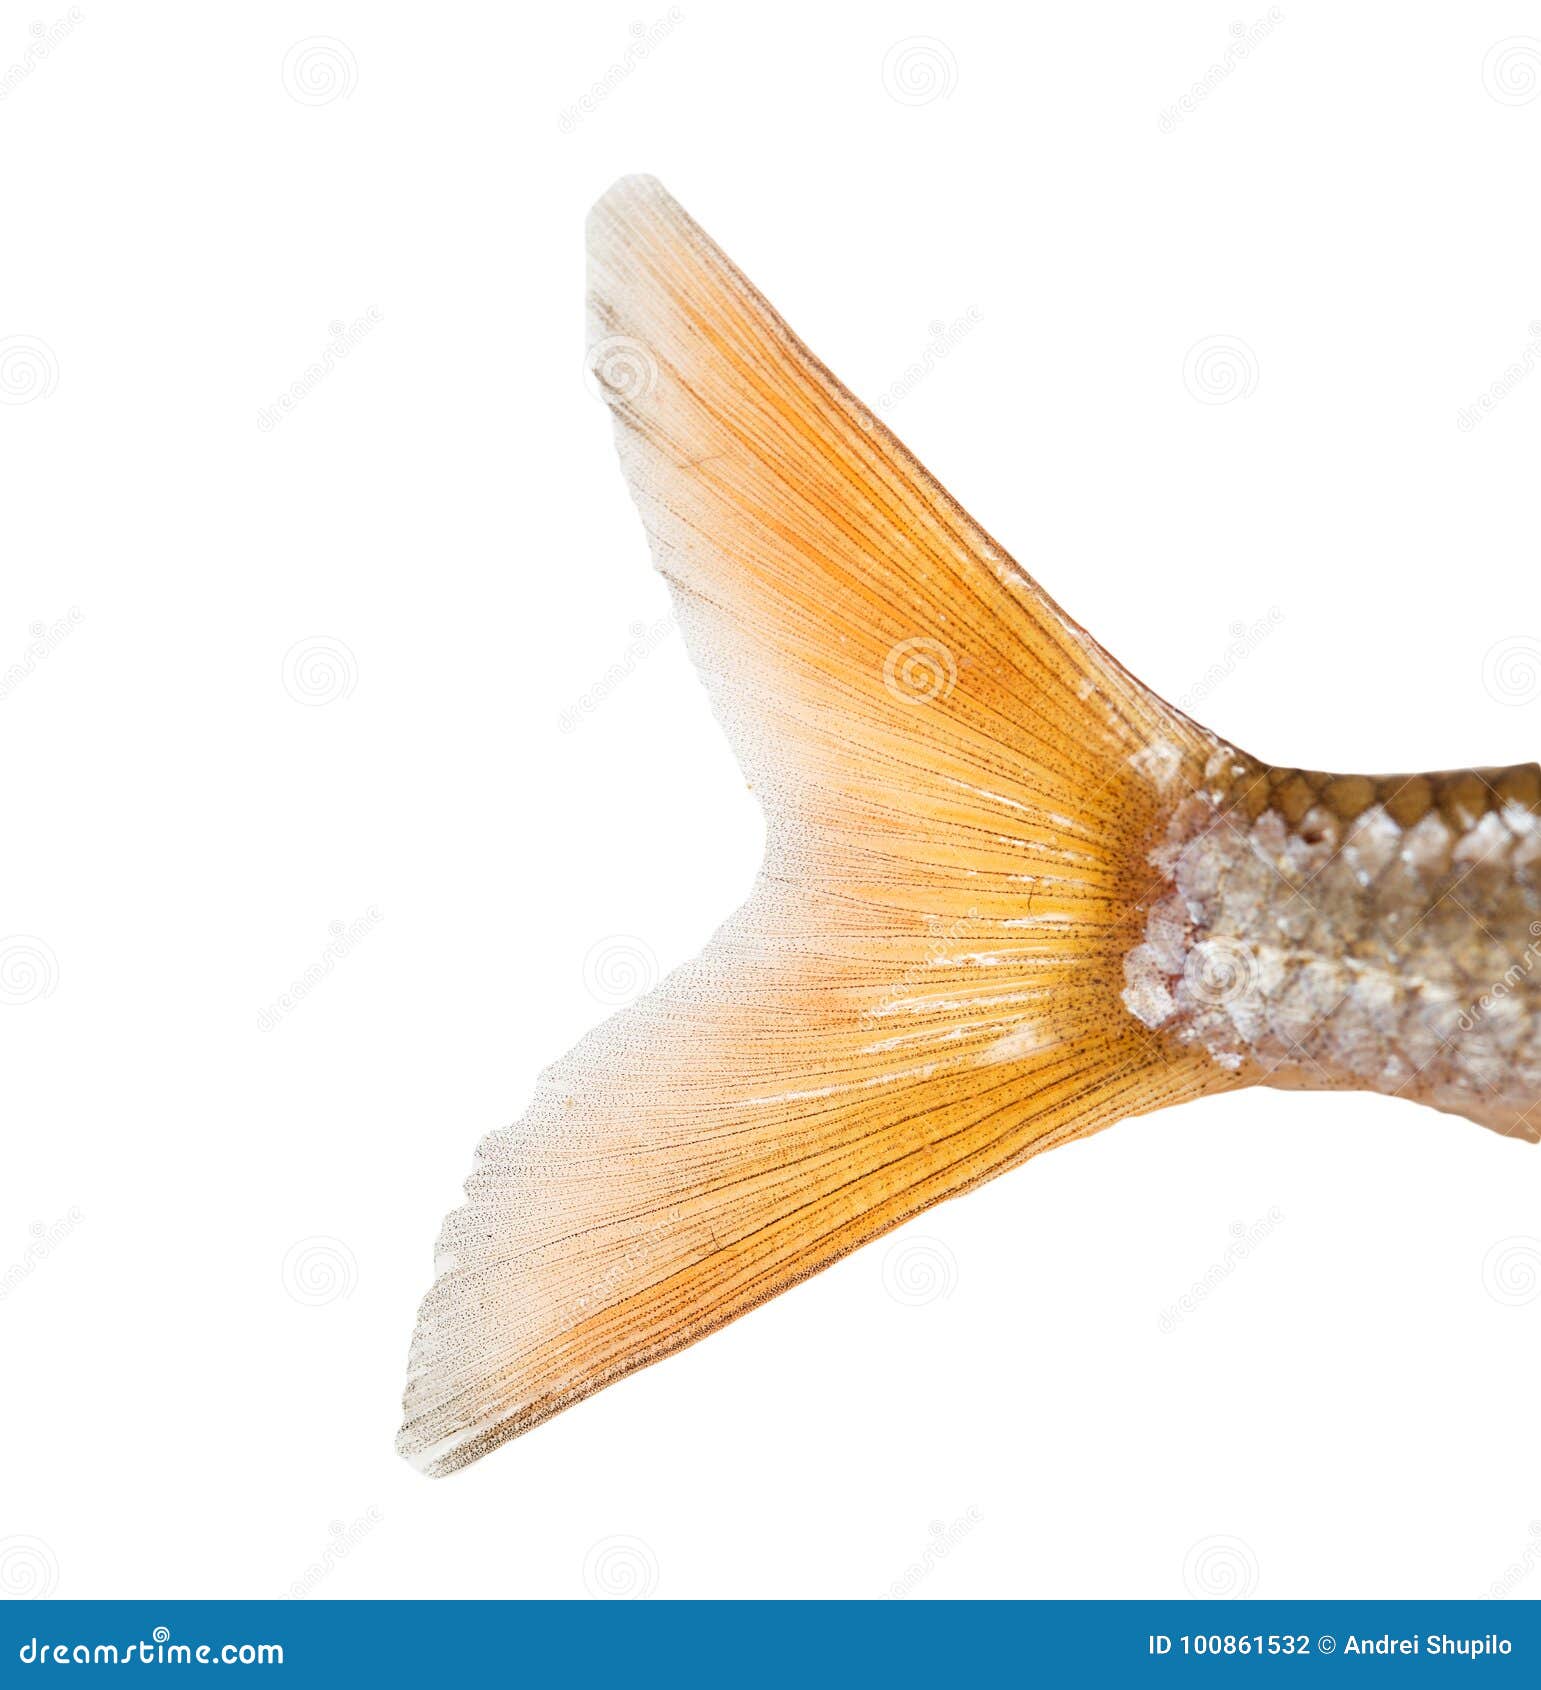 一条漂亮的大尾金鱼尾巴金色与黑色相间肚子向上翘起动物素材设计